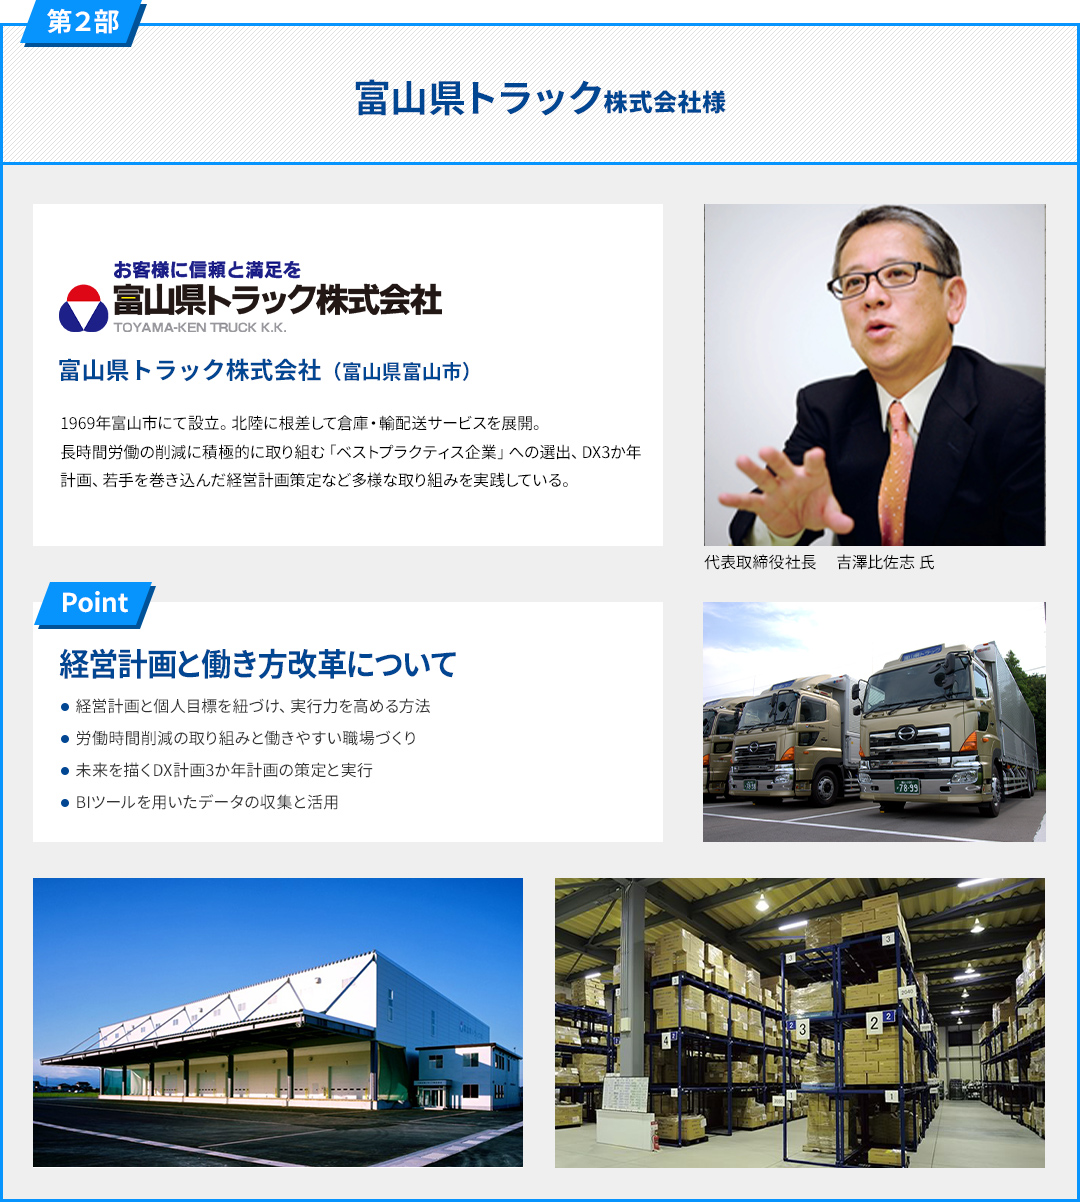 富山県トラック株式会社